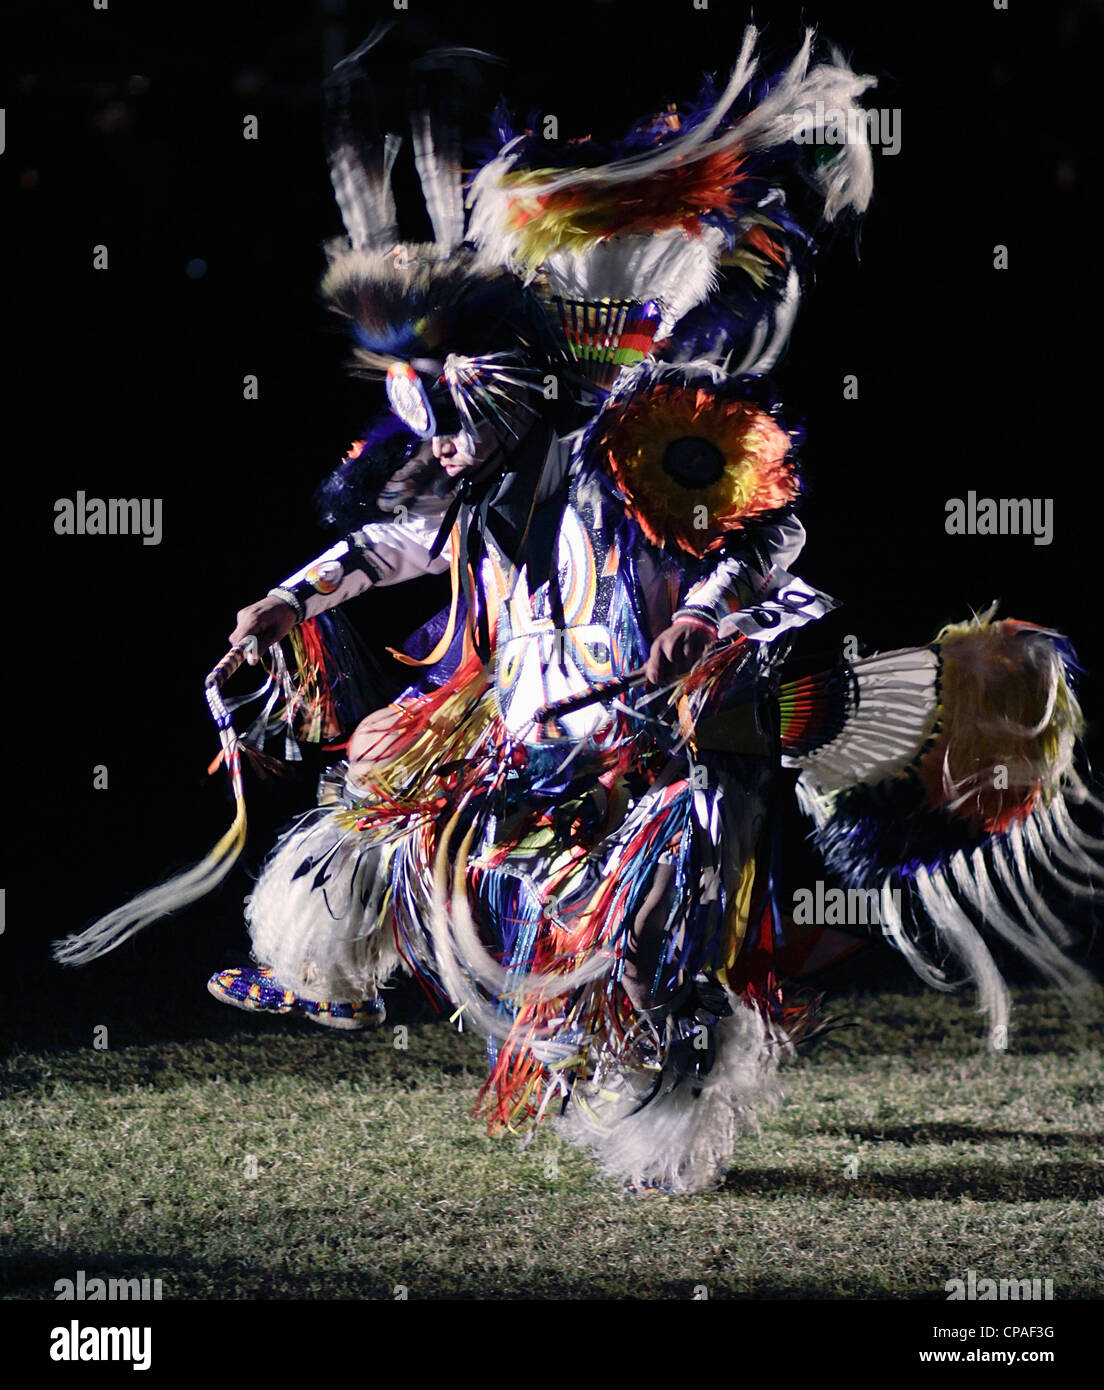 Stati Uniti d'America, Arizona, Scottsdale. Fancy dance contest, alla Montagna Rossa Eagle powwow, sale fiume Pima-Maricopa comunità indiana. Foto Stock